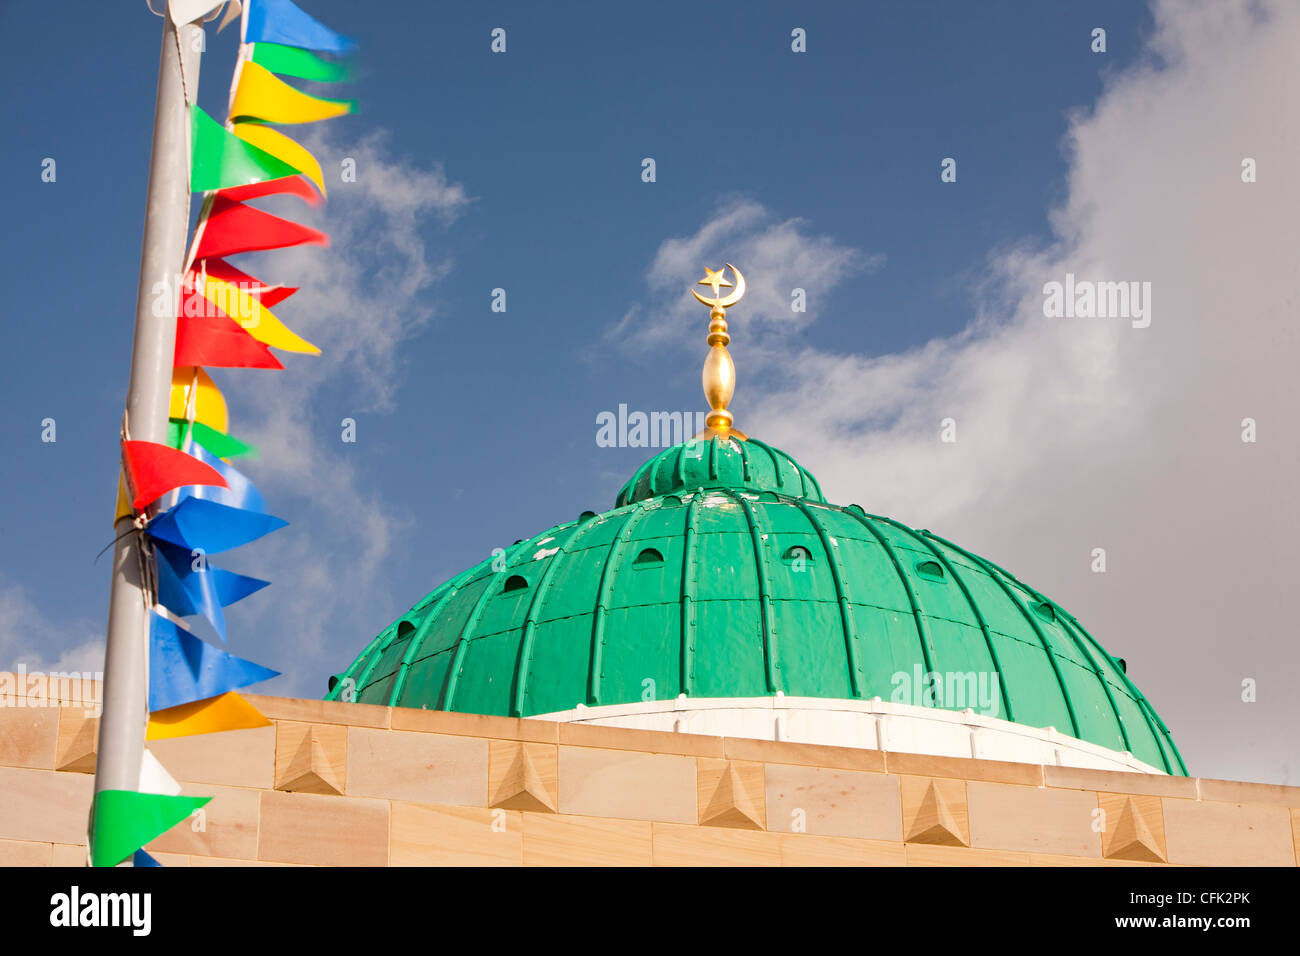 Le dôme de la Mosquée Jamia à Keighley, West Yorkshire, Royaume-Uni. Banque D'Images